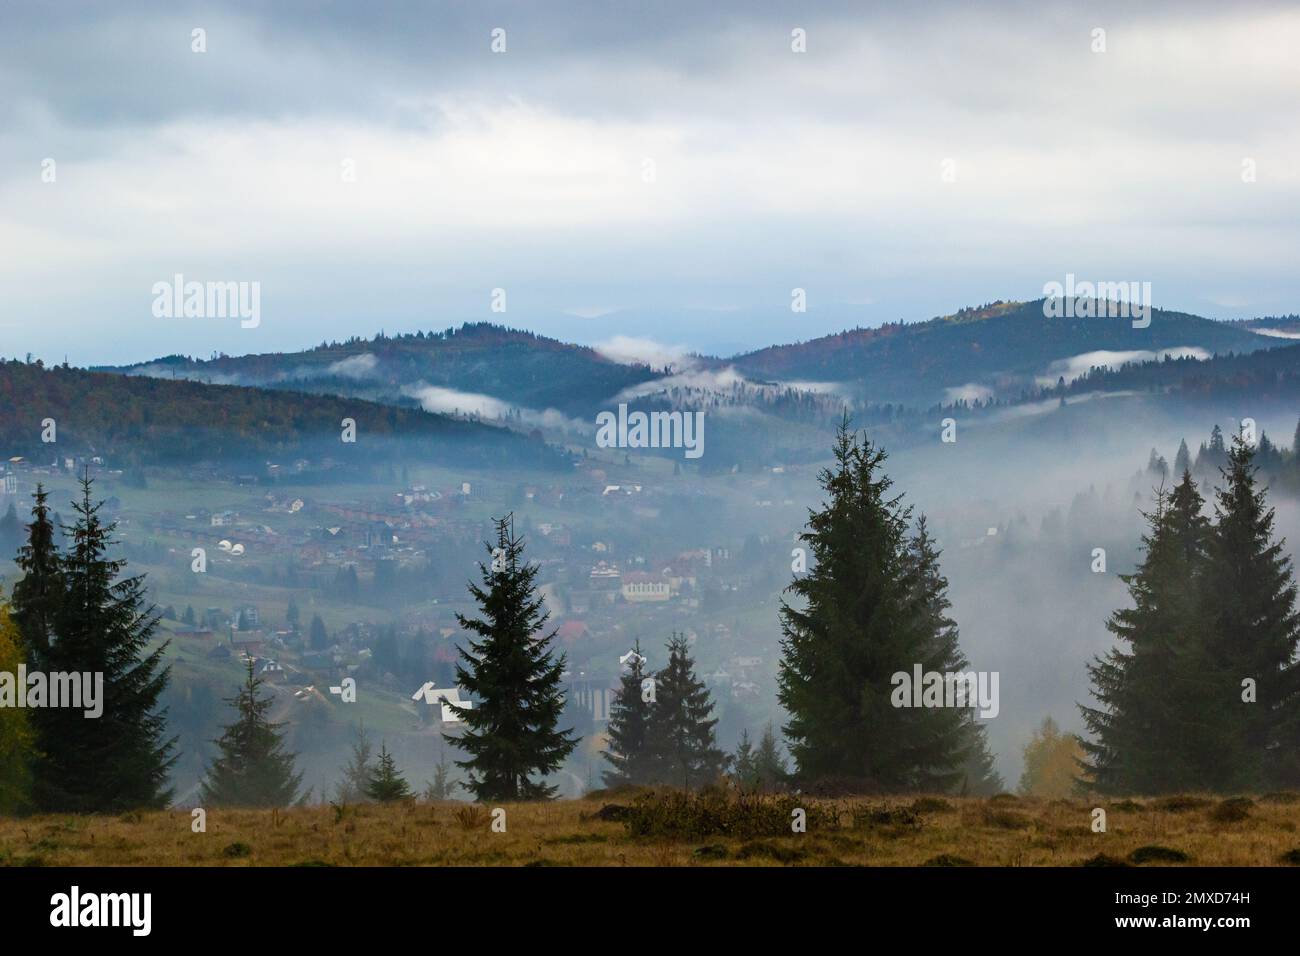 Paysage d'automne avec brouillard dans les montagnes. Forêt de sapins sur les collines. Carpates, Ukraine, Europe. Photo de haute qualité. Banque D'Images